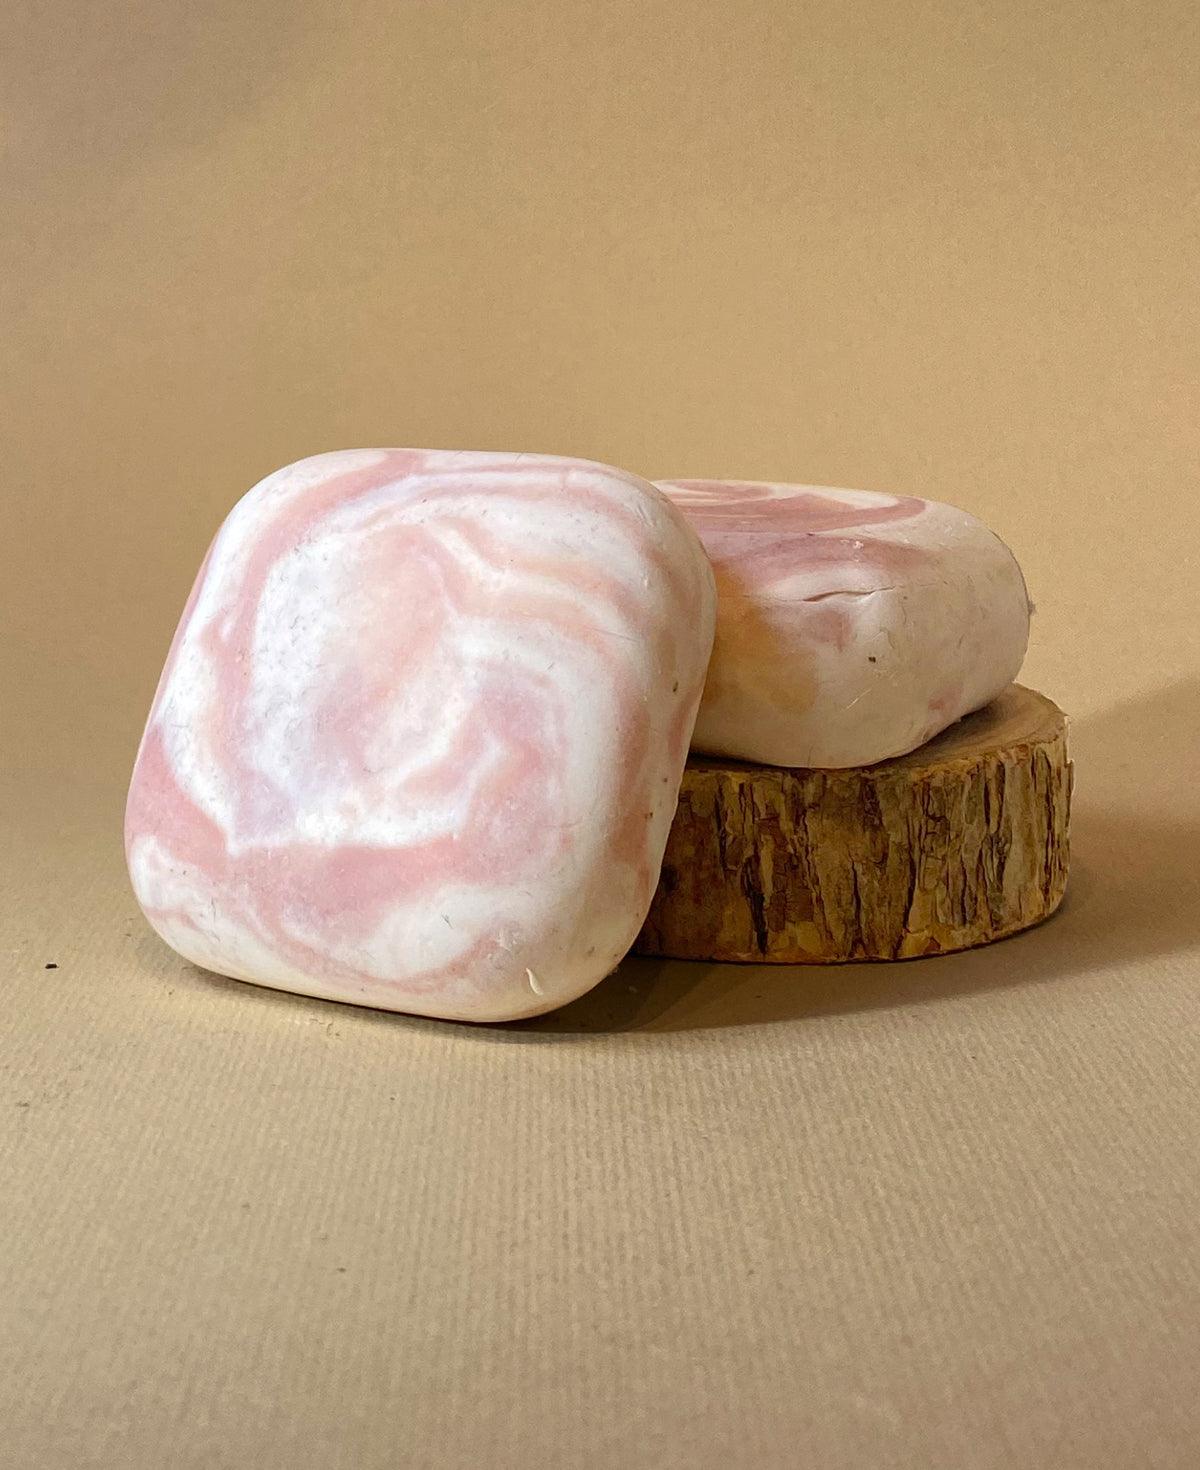 סבון פנים טבעי מוצק חלב עיזים והידרוסול ורדים - דושה